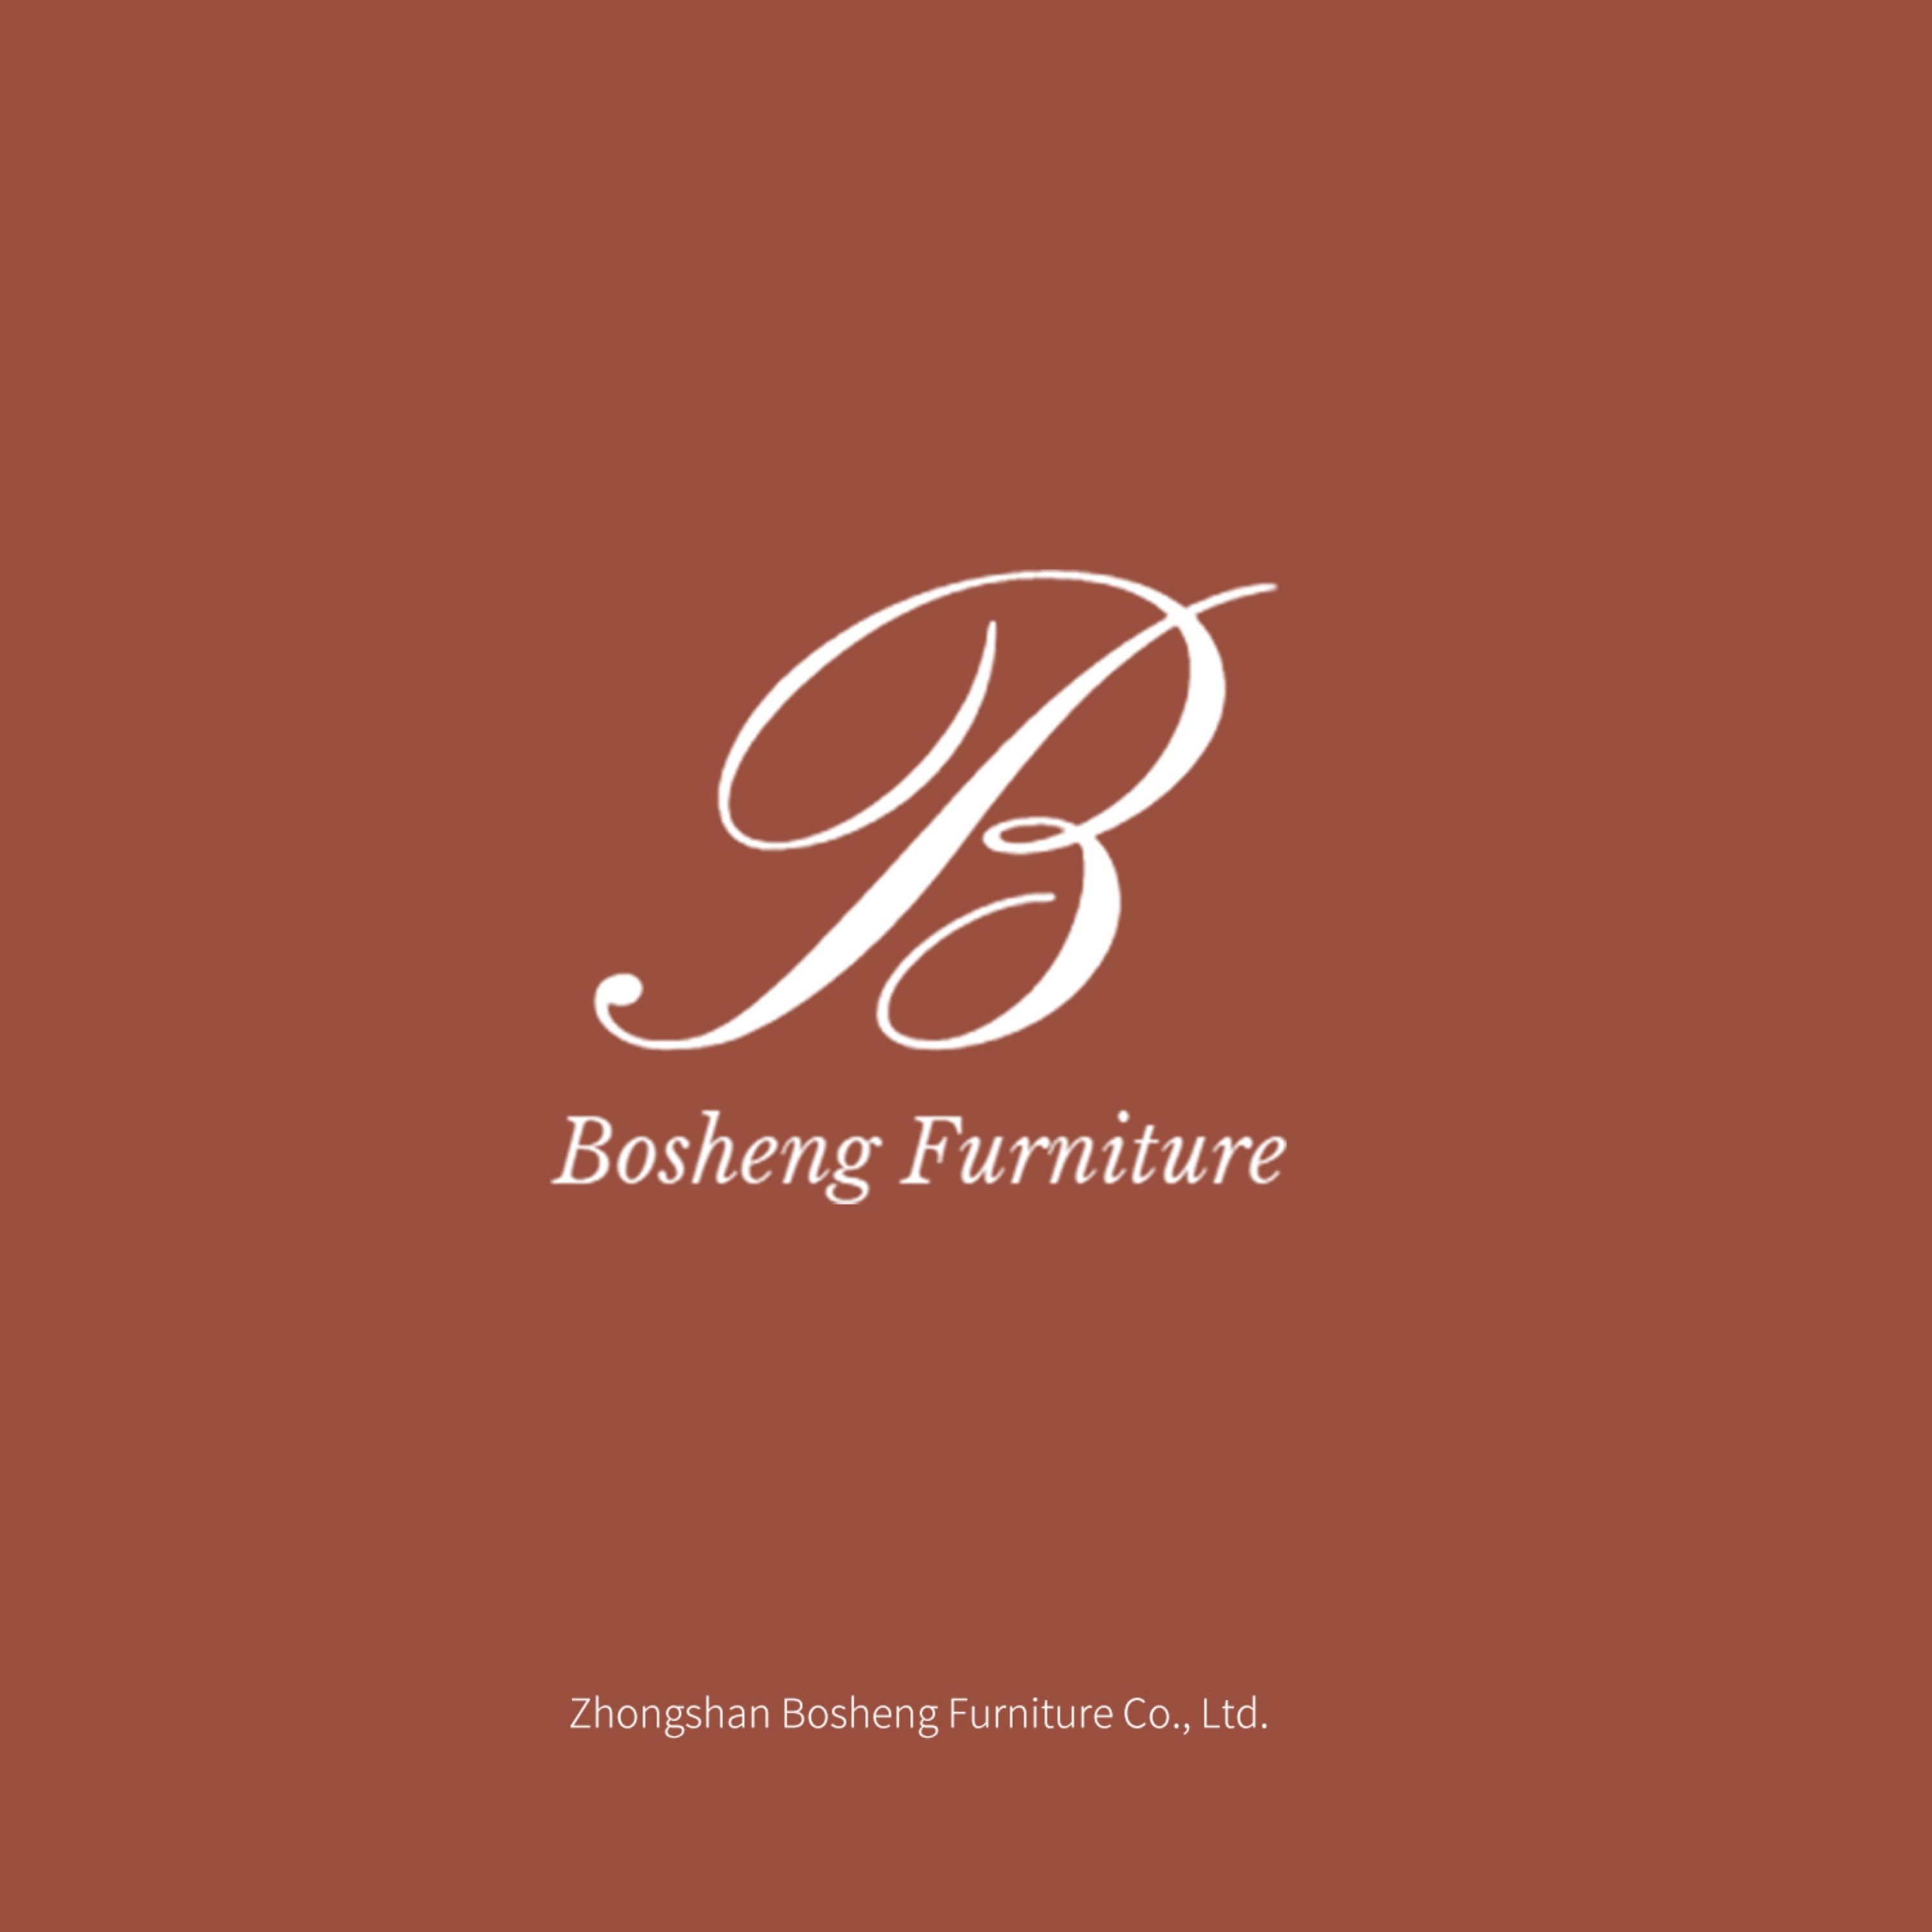 Bosheng Furniture